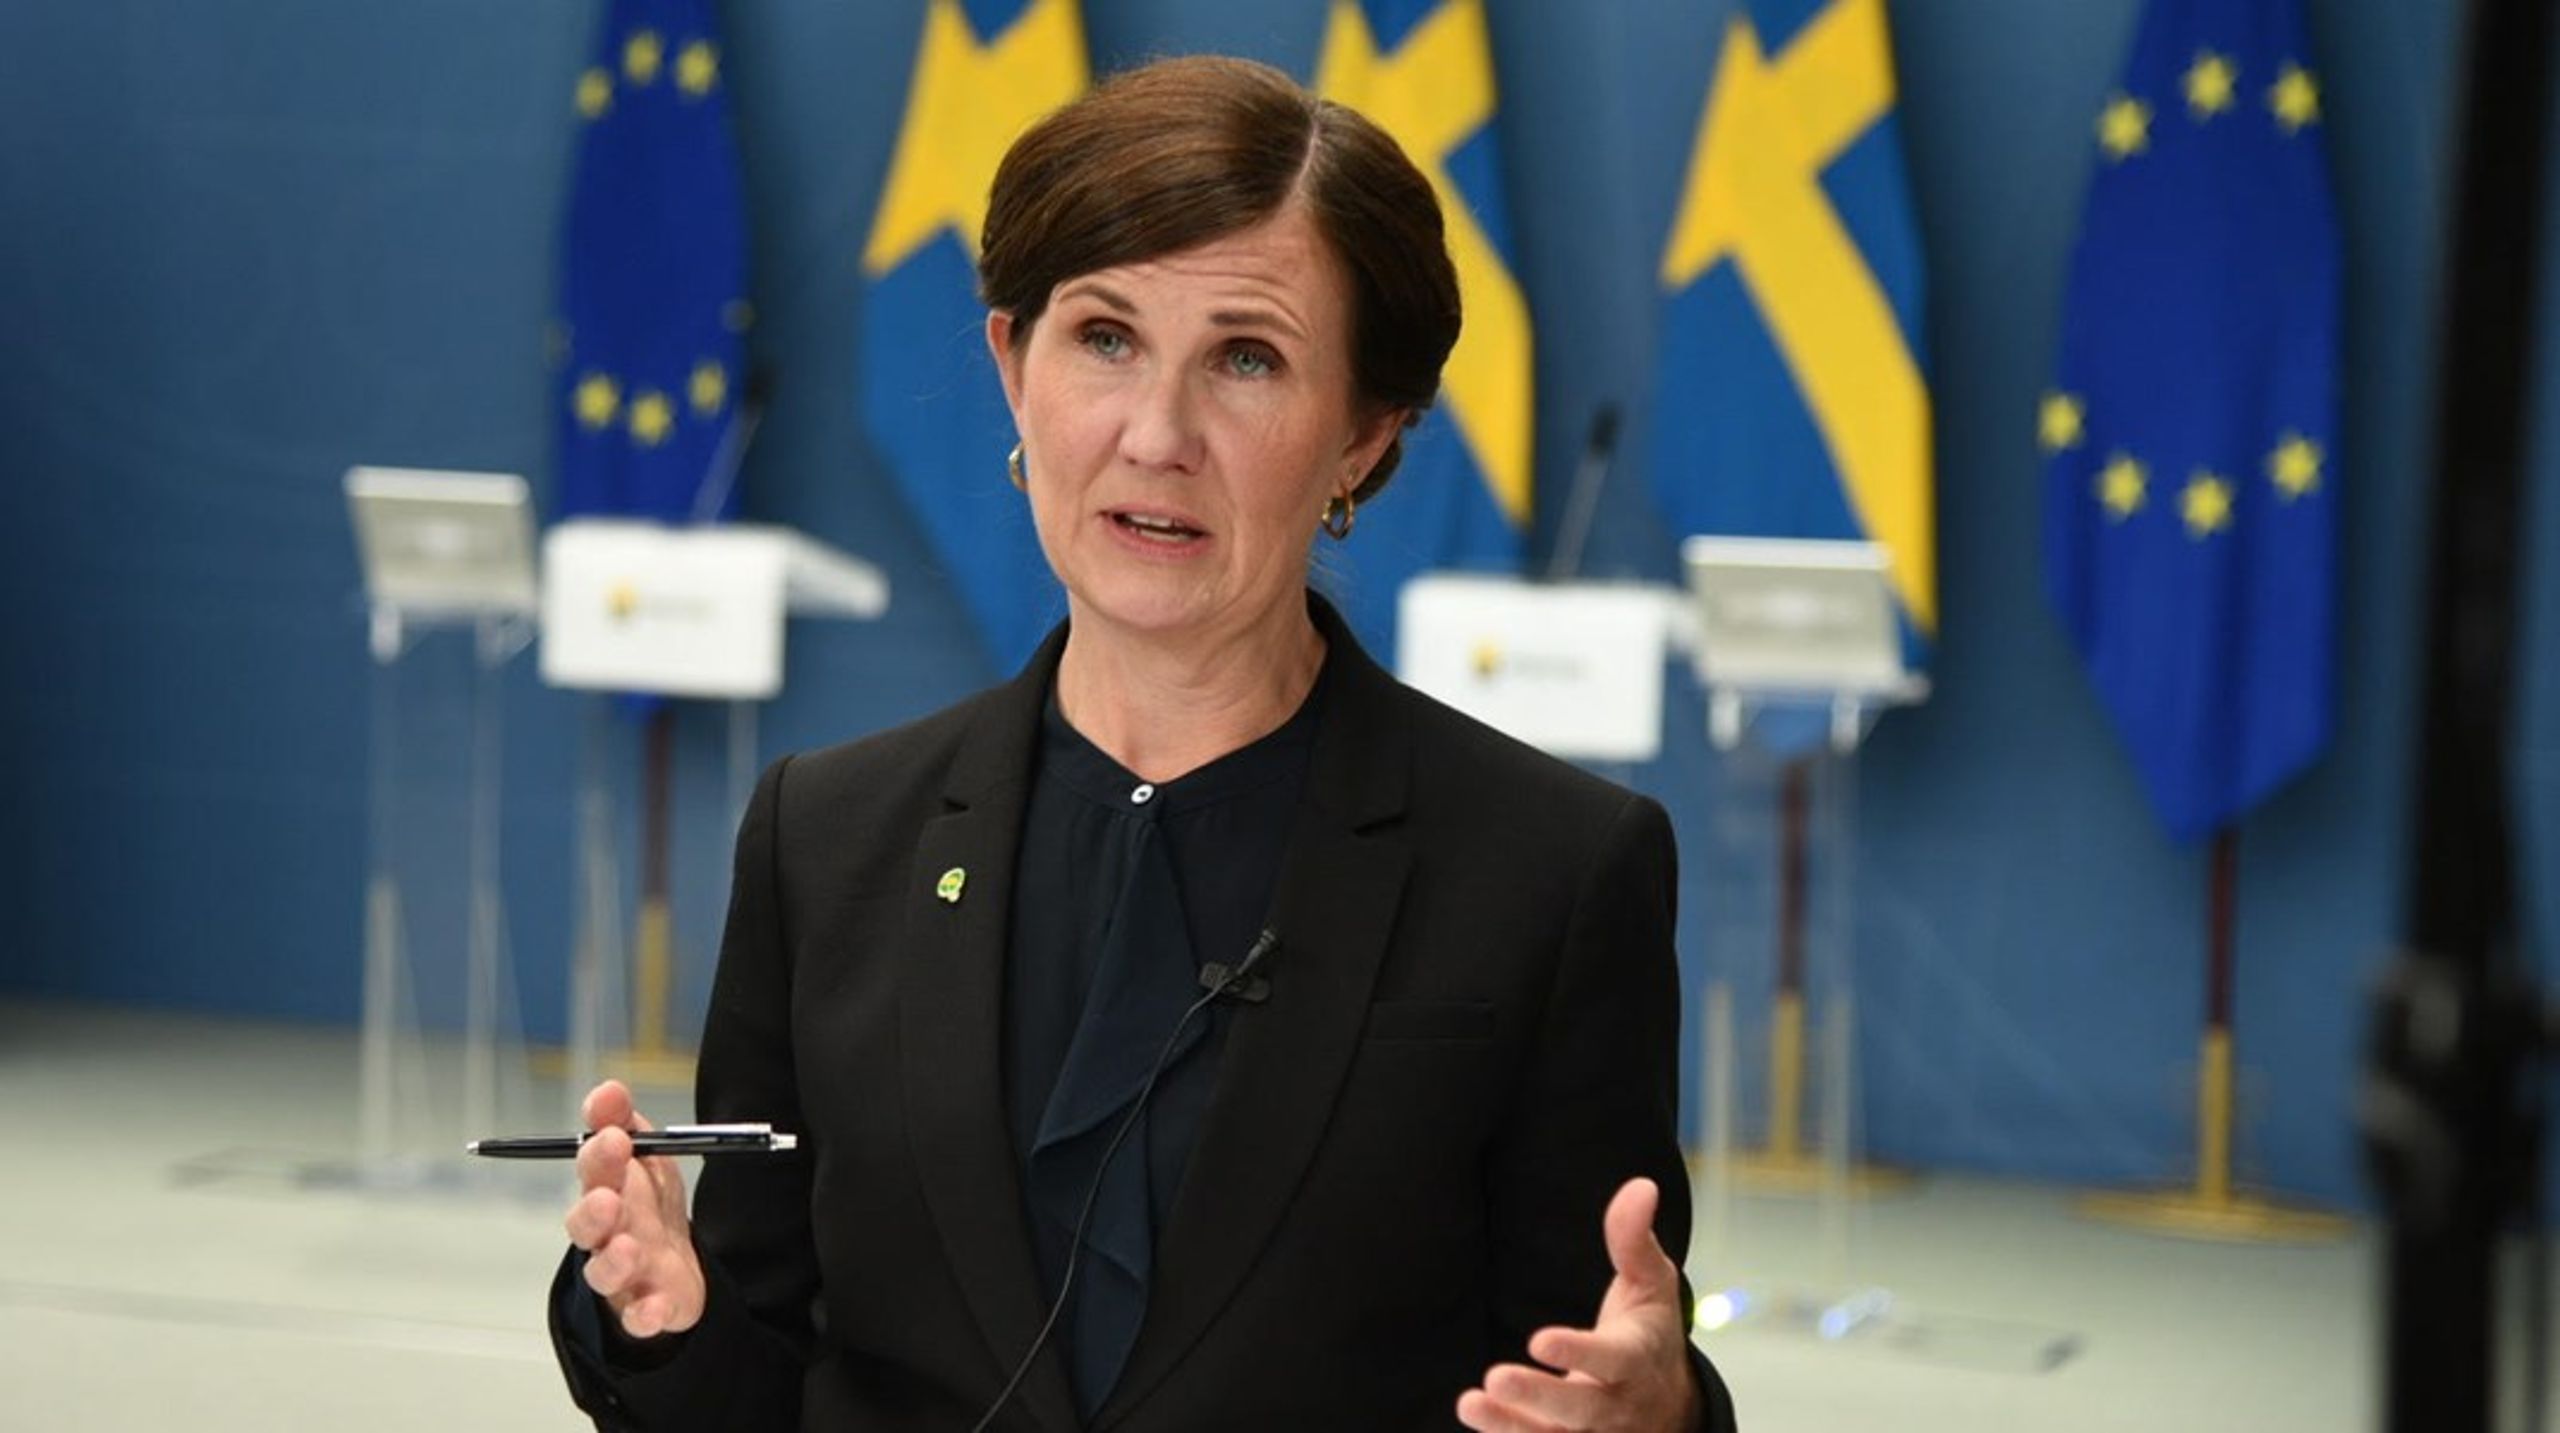 Jämställdhetsminister har haft digitalt samråd med företrädare för civilsamhällesorganisationer om vilken roll de ska spela för integrationen av utrikesfödda på svensk arbetsmarknad.